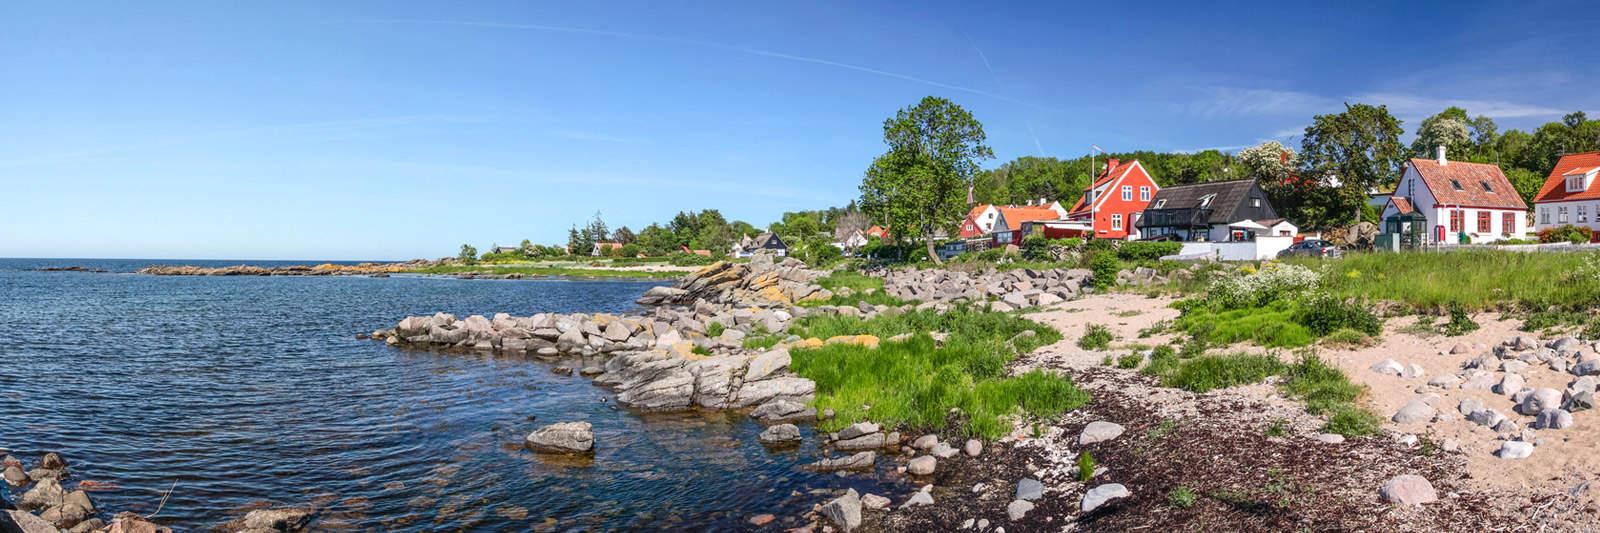 117 Ferienwohnungen und Ferienhäuser in Spøttrup - tourist-online.de